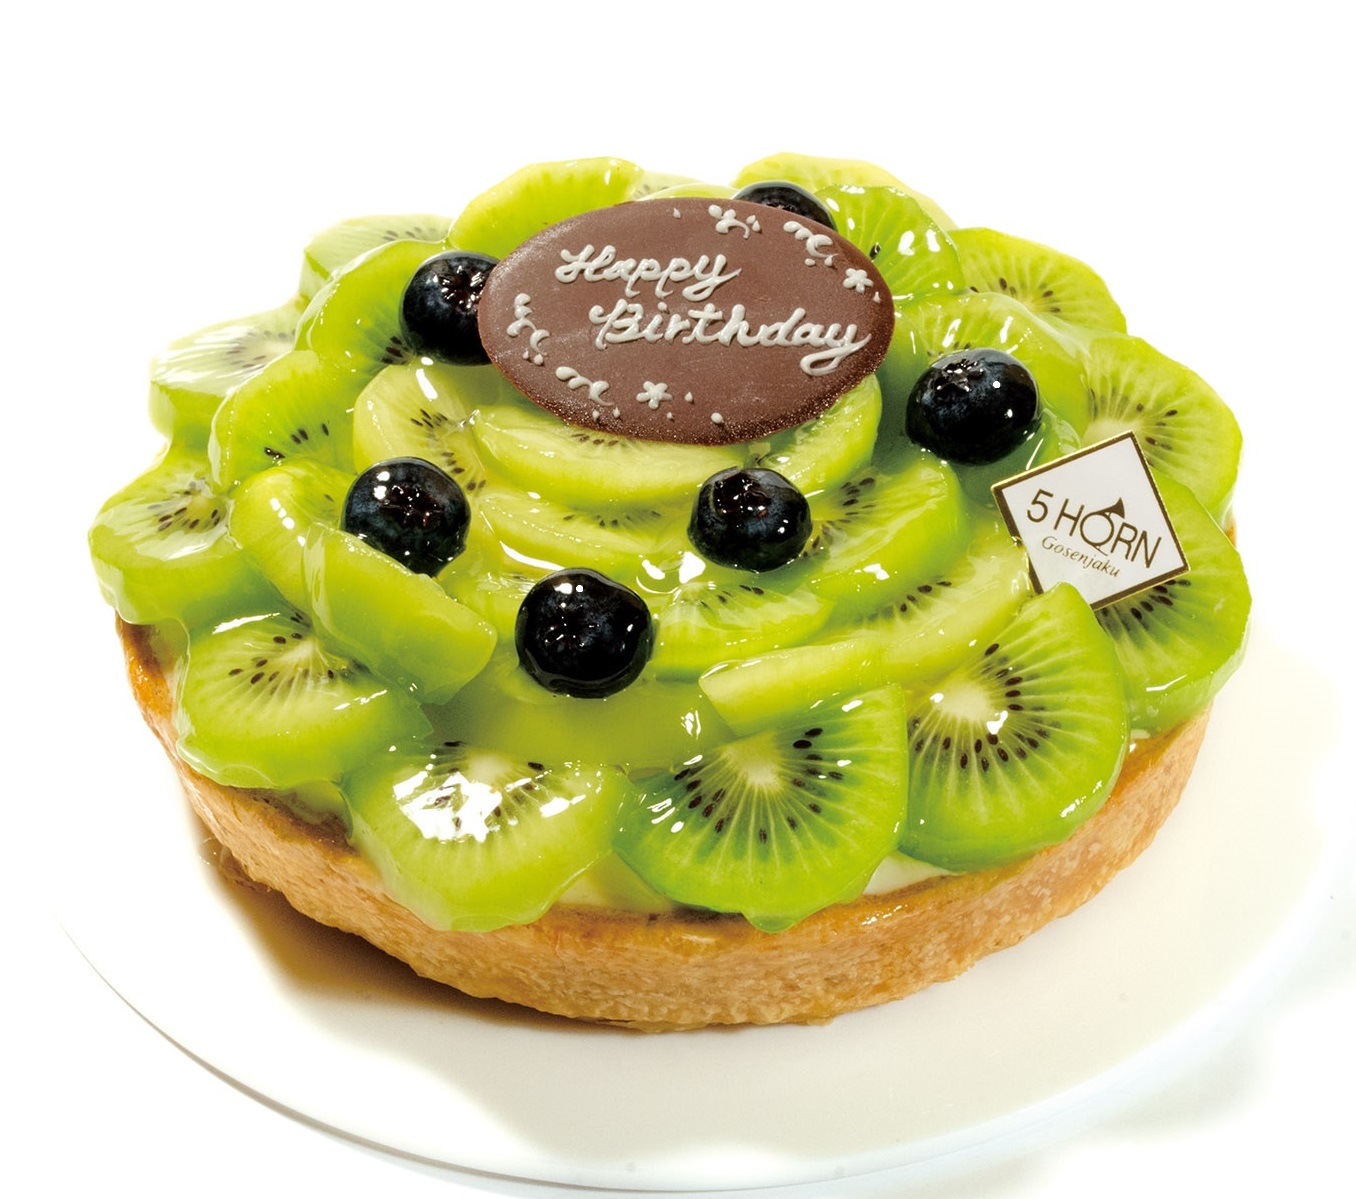 ３月新作ケーキ キウイとチーズのタルト 松本市のケーキ屋 5horn ファイブホルン 公式